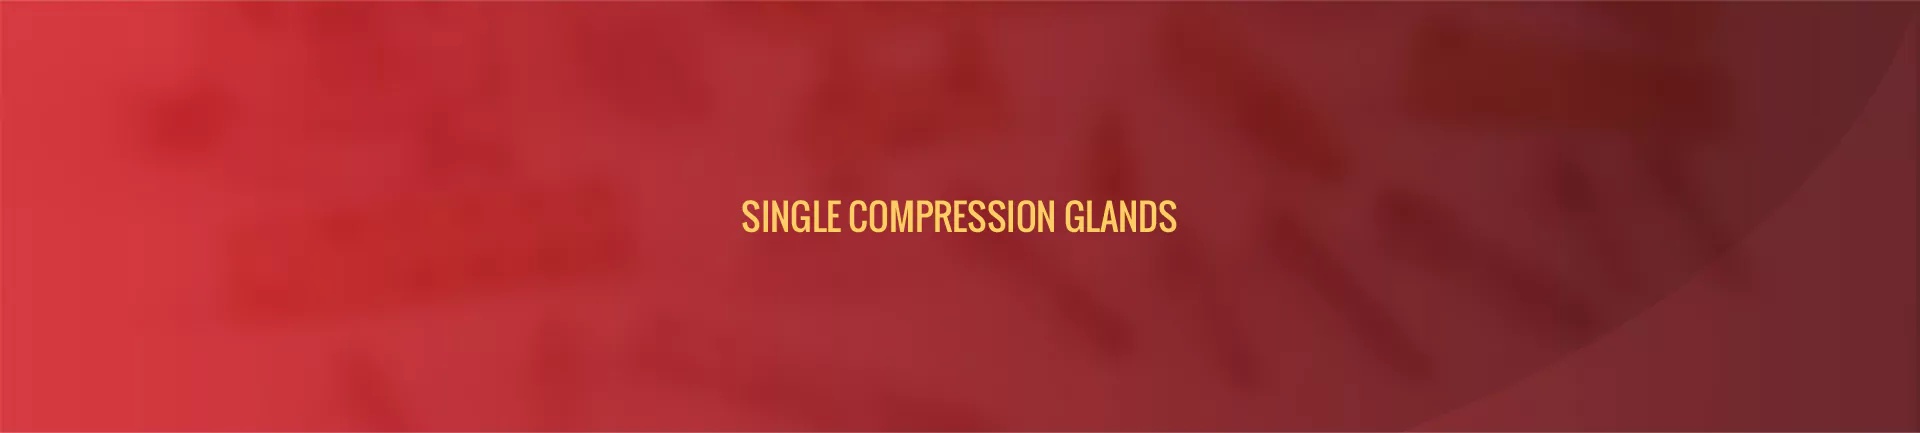 single-compression-glands-banner